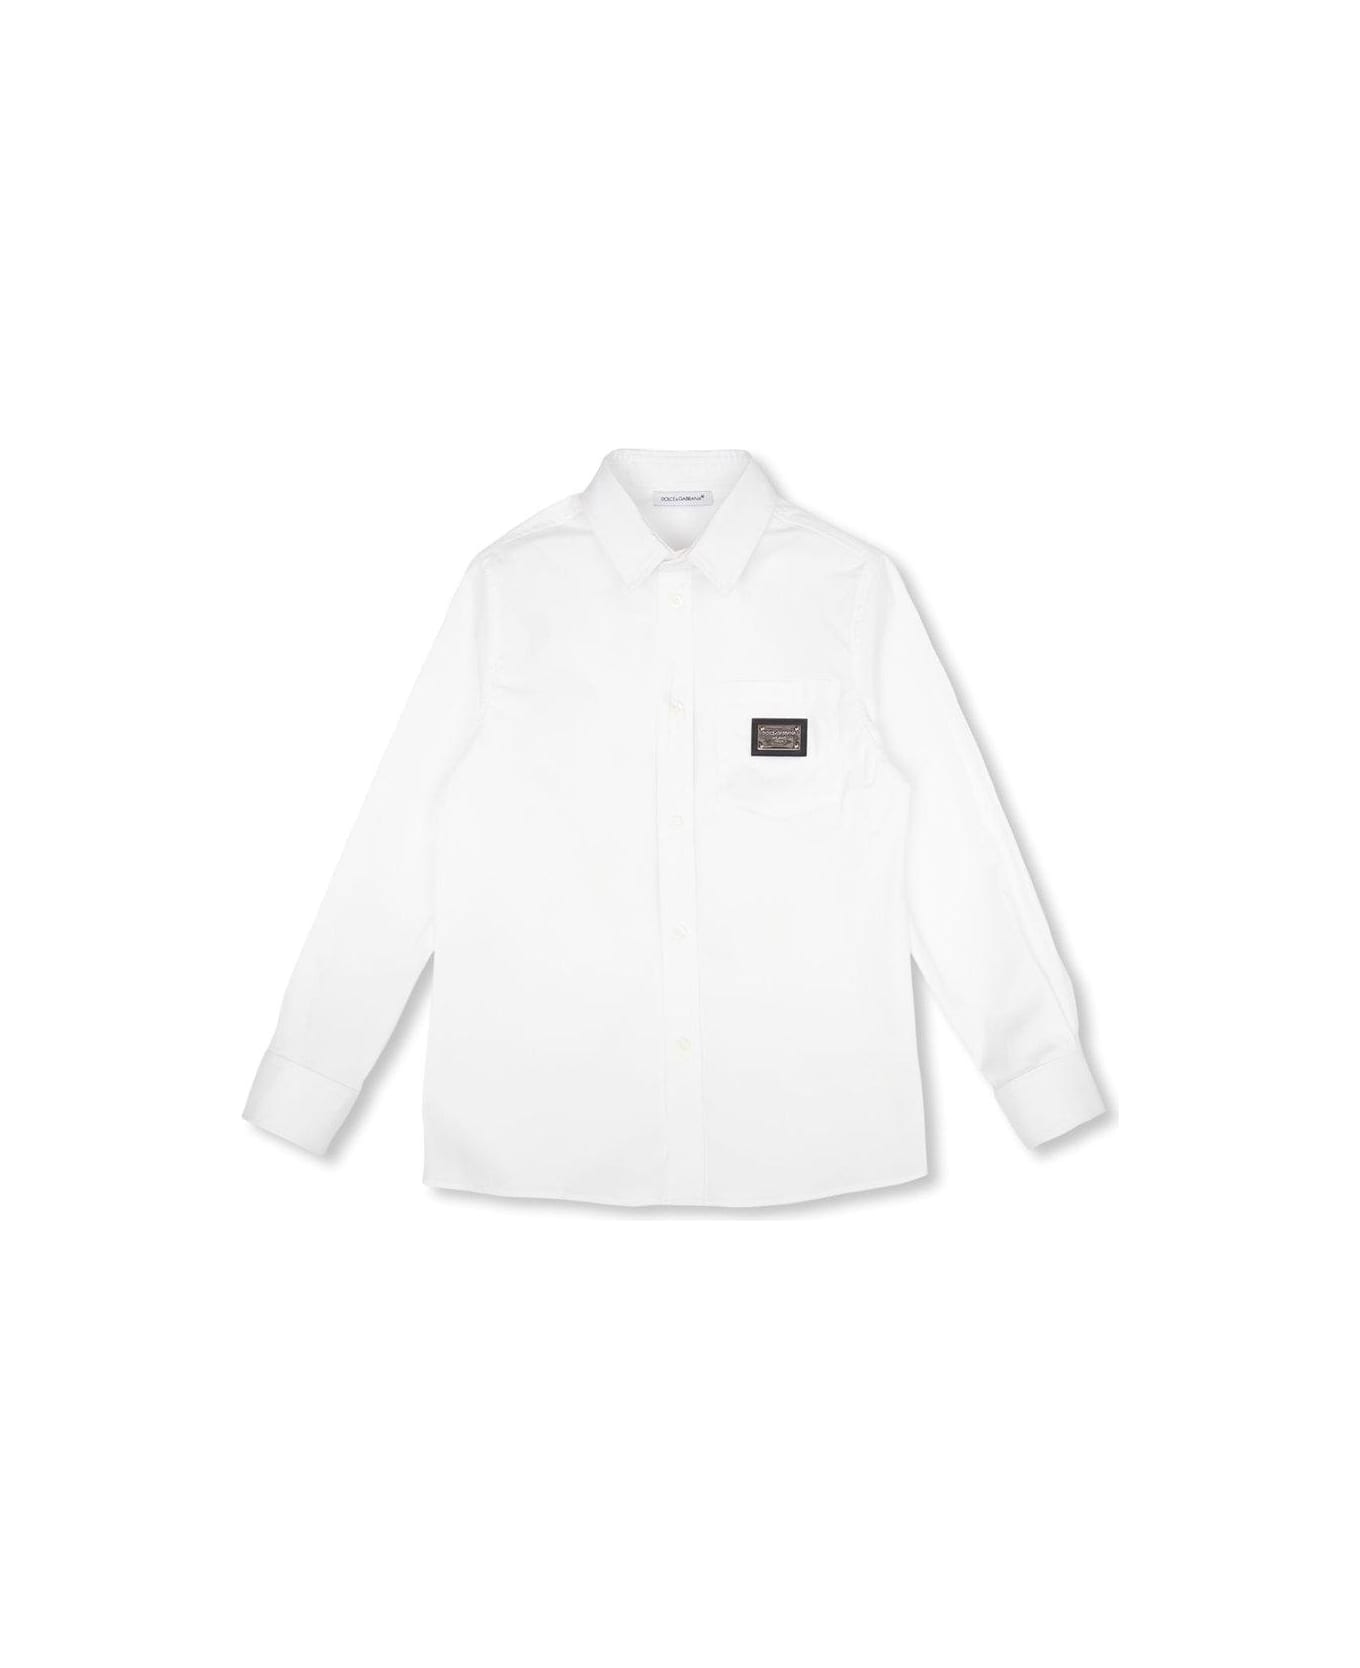 Dolce & Gabbana Buttoned Long-sleeved Shirt シャツ